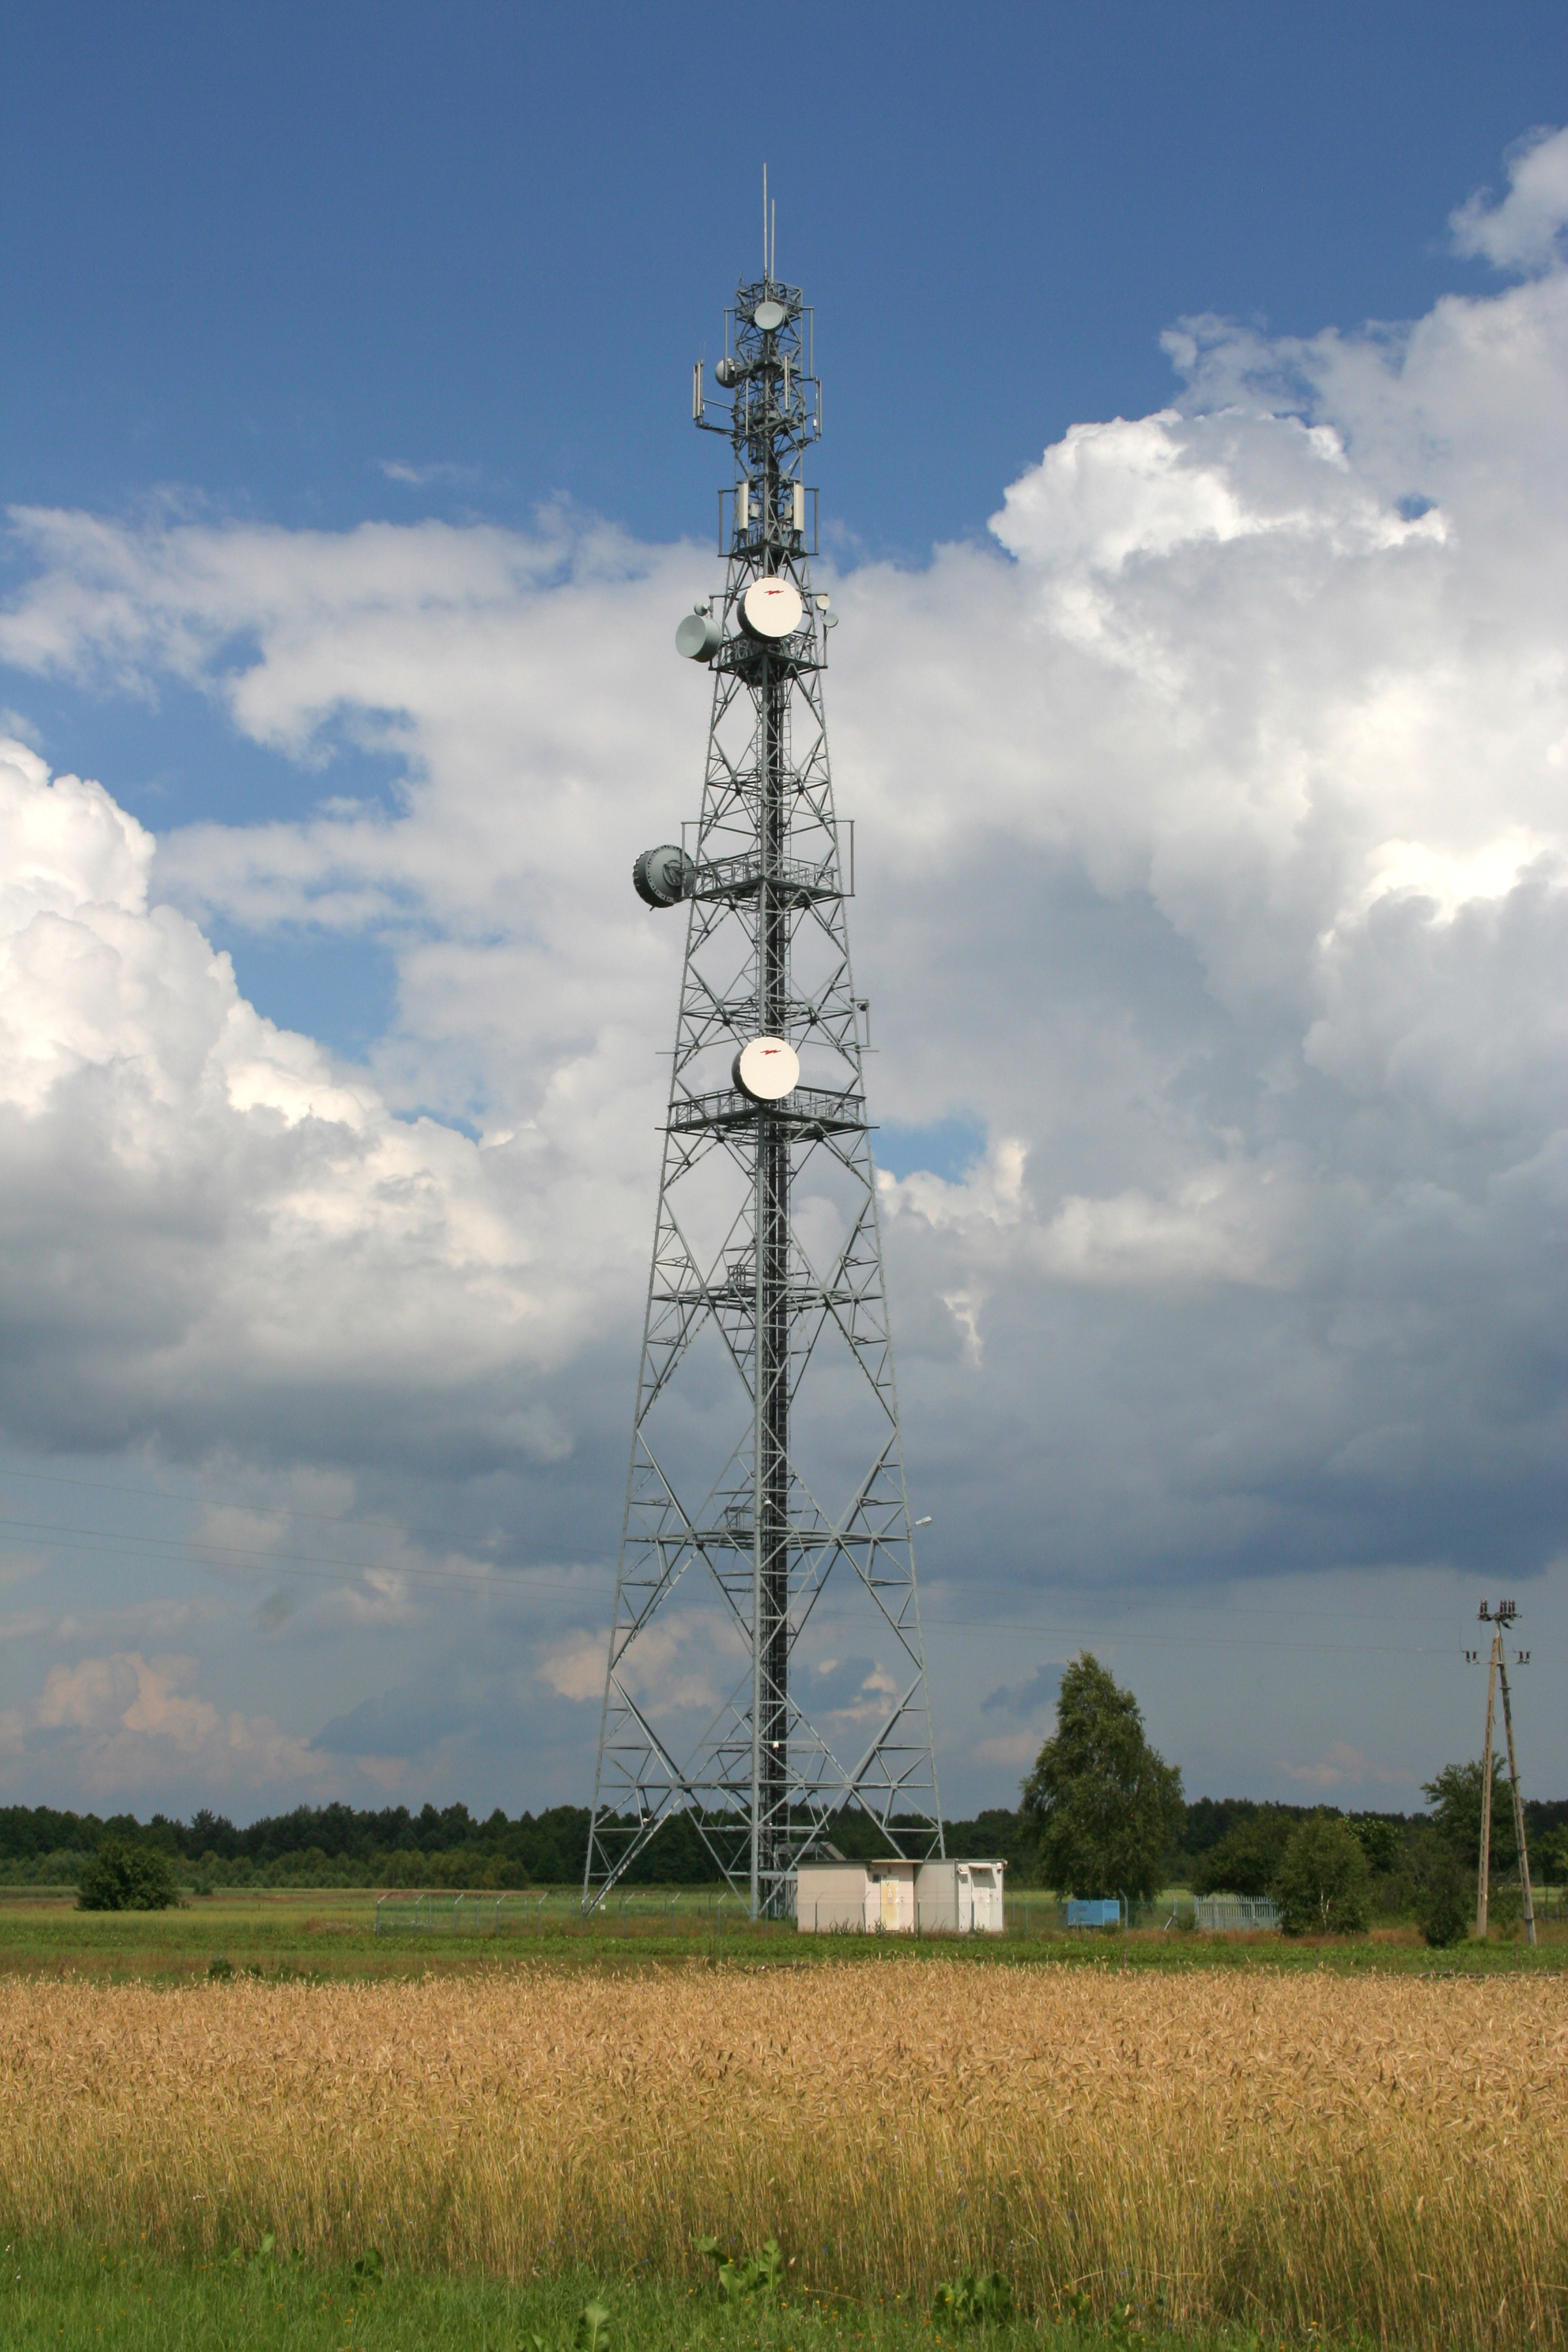 Miedwieżyki - Radio tower